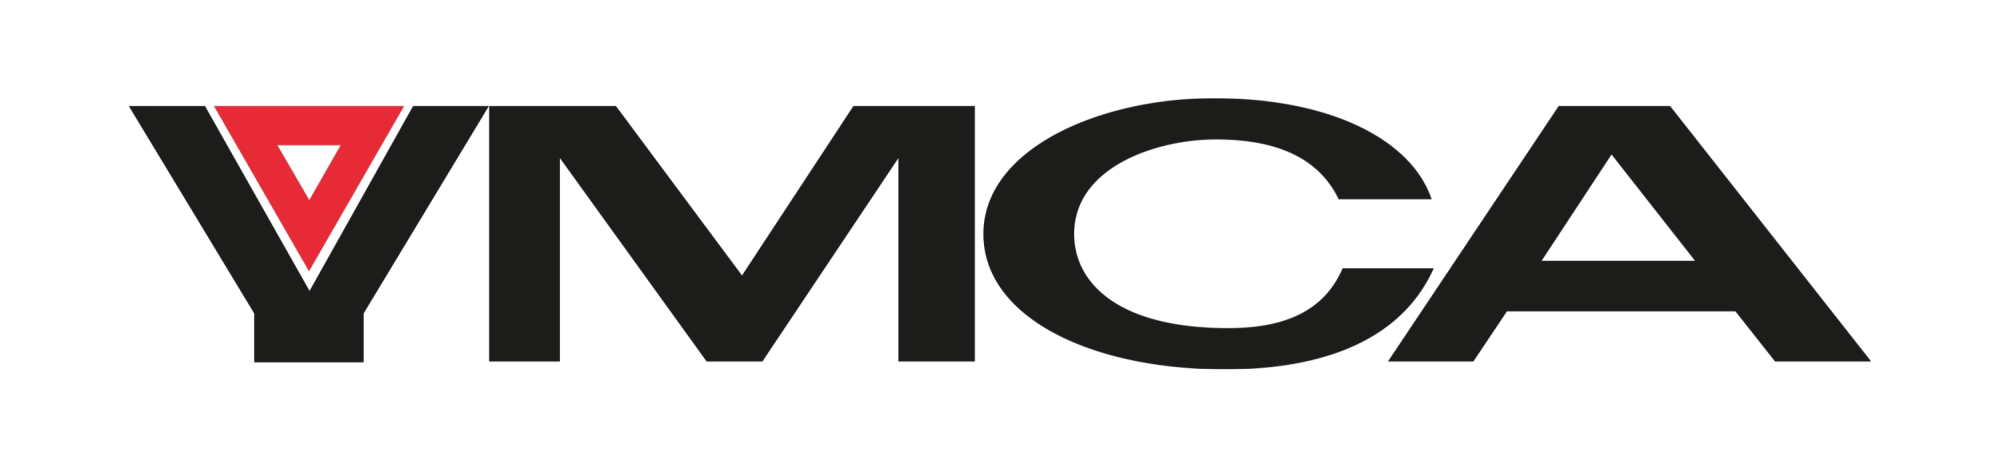 YMCA-logo-large-e1554721051664